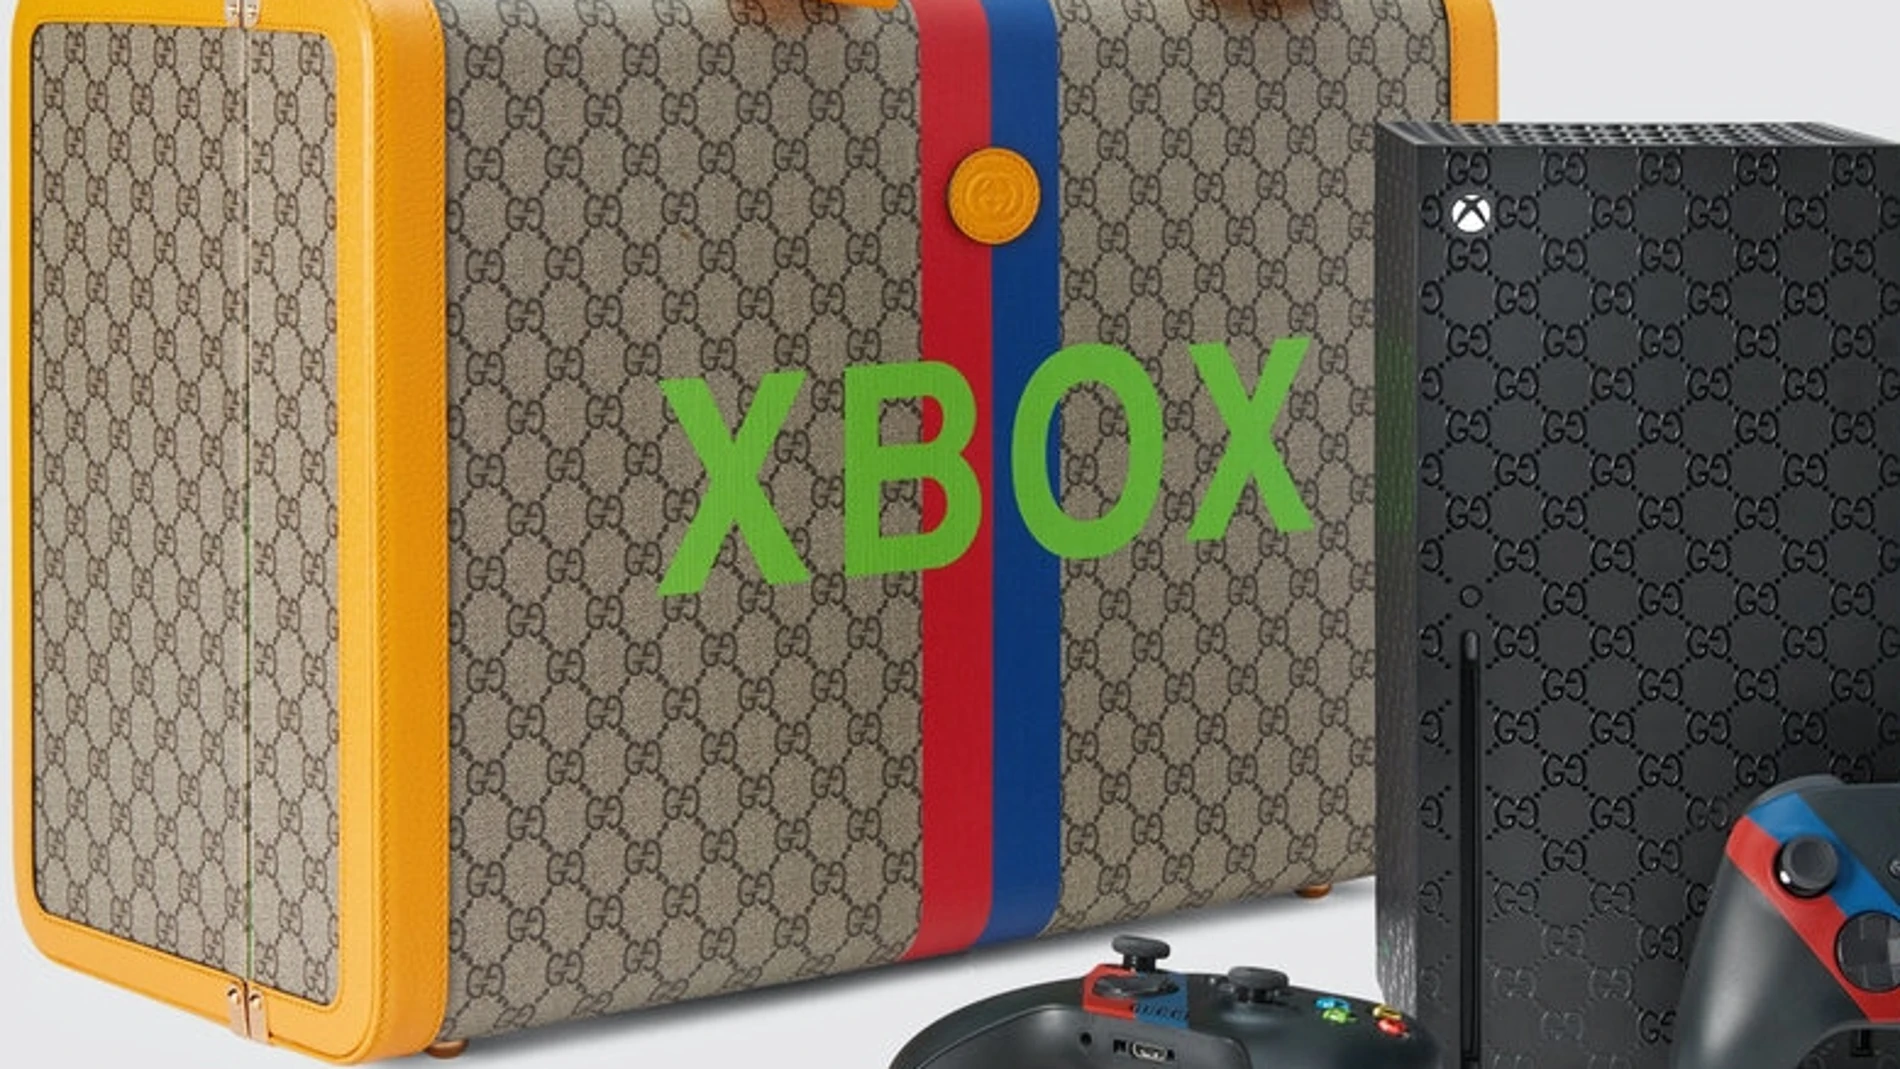 Gucci lanza una limitada edición de Xbox con un precio de auténtico lujo